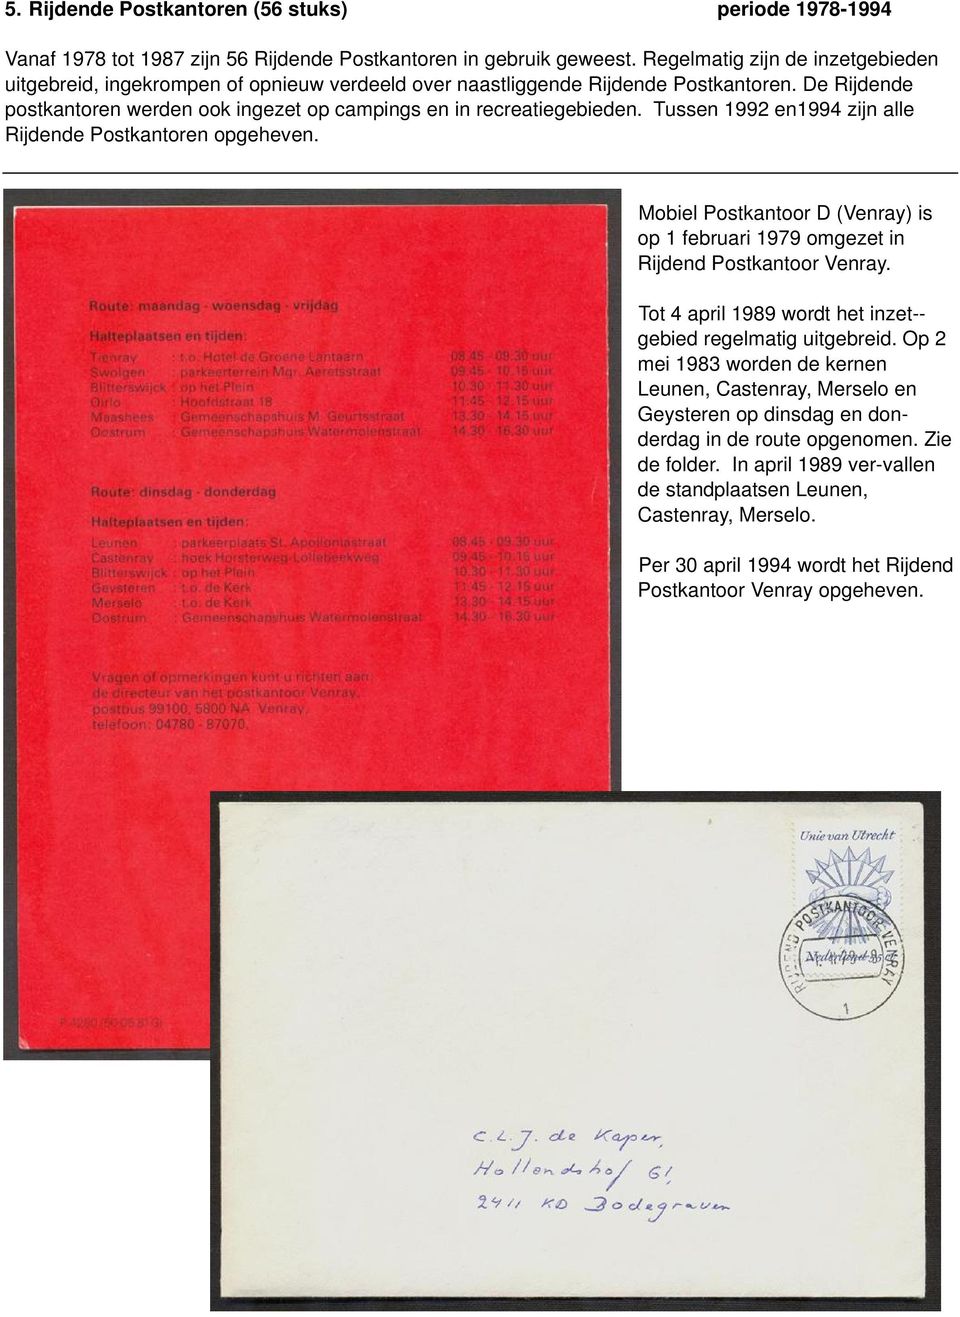 Tussen 1992 en1994 zijn alle Rijdende Postkantoren opgeheven. Mobiel Postkantoor D (Venray) is op 1 februari 1979 omgezet in Rijdend Postkantoor Venray.